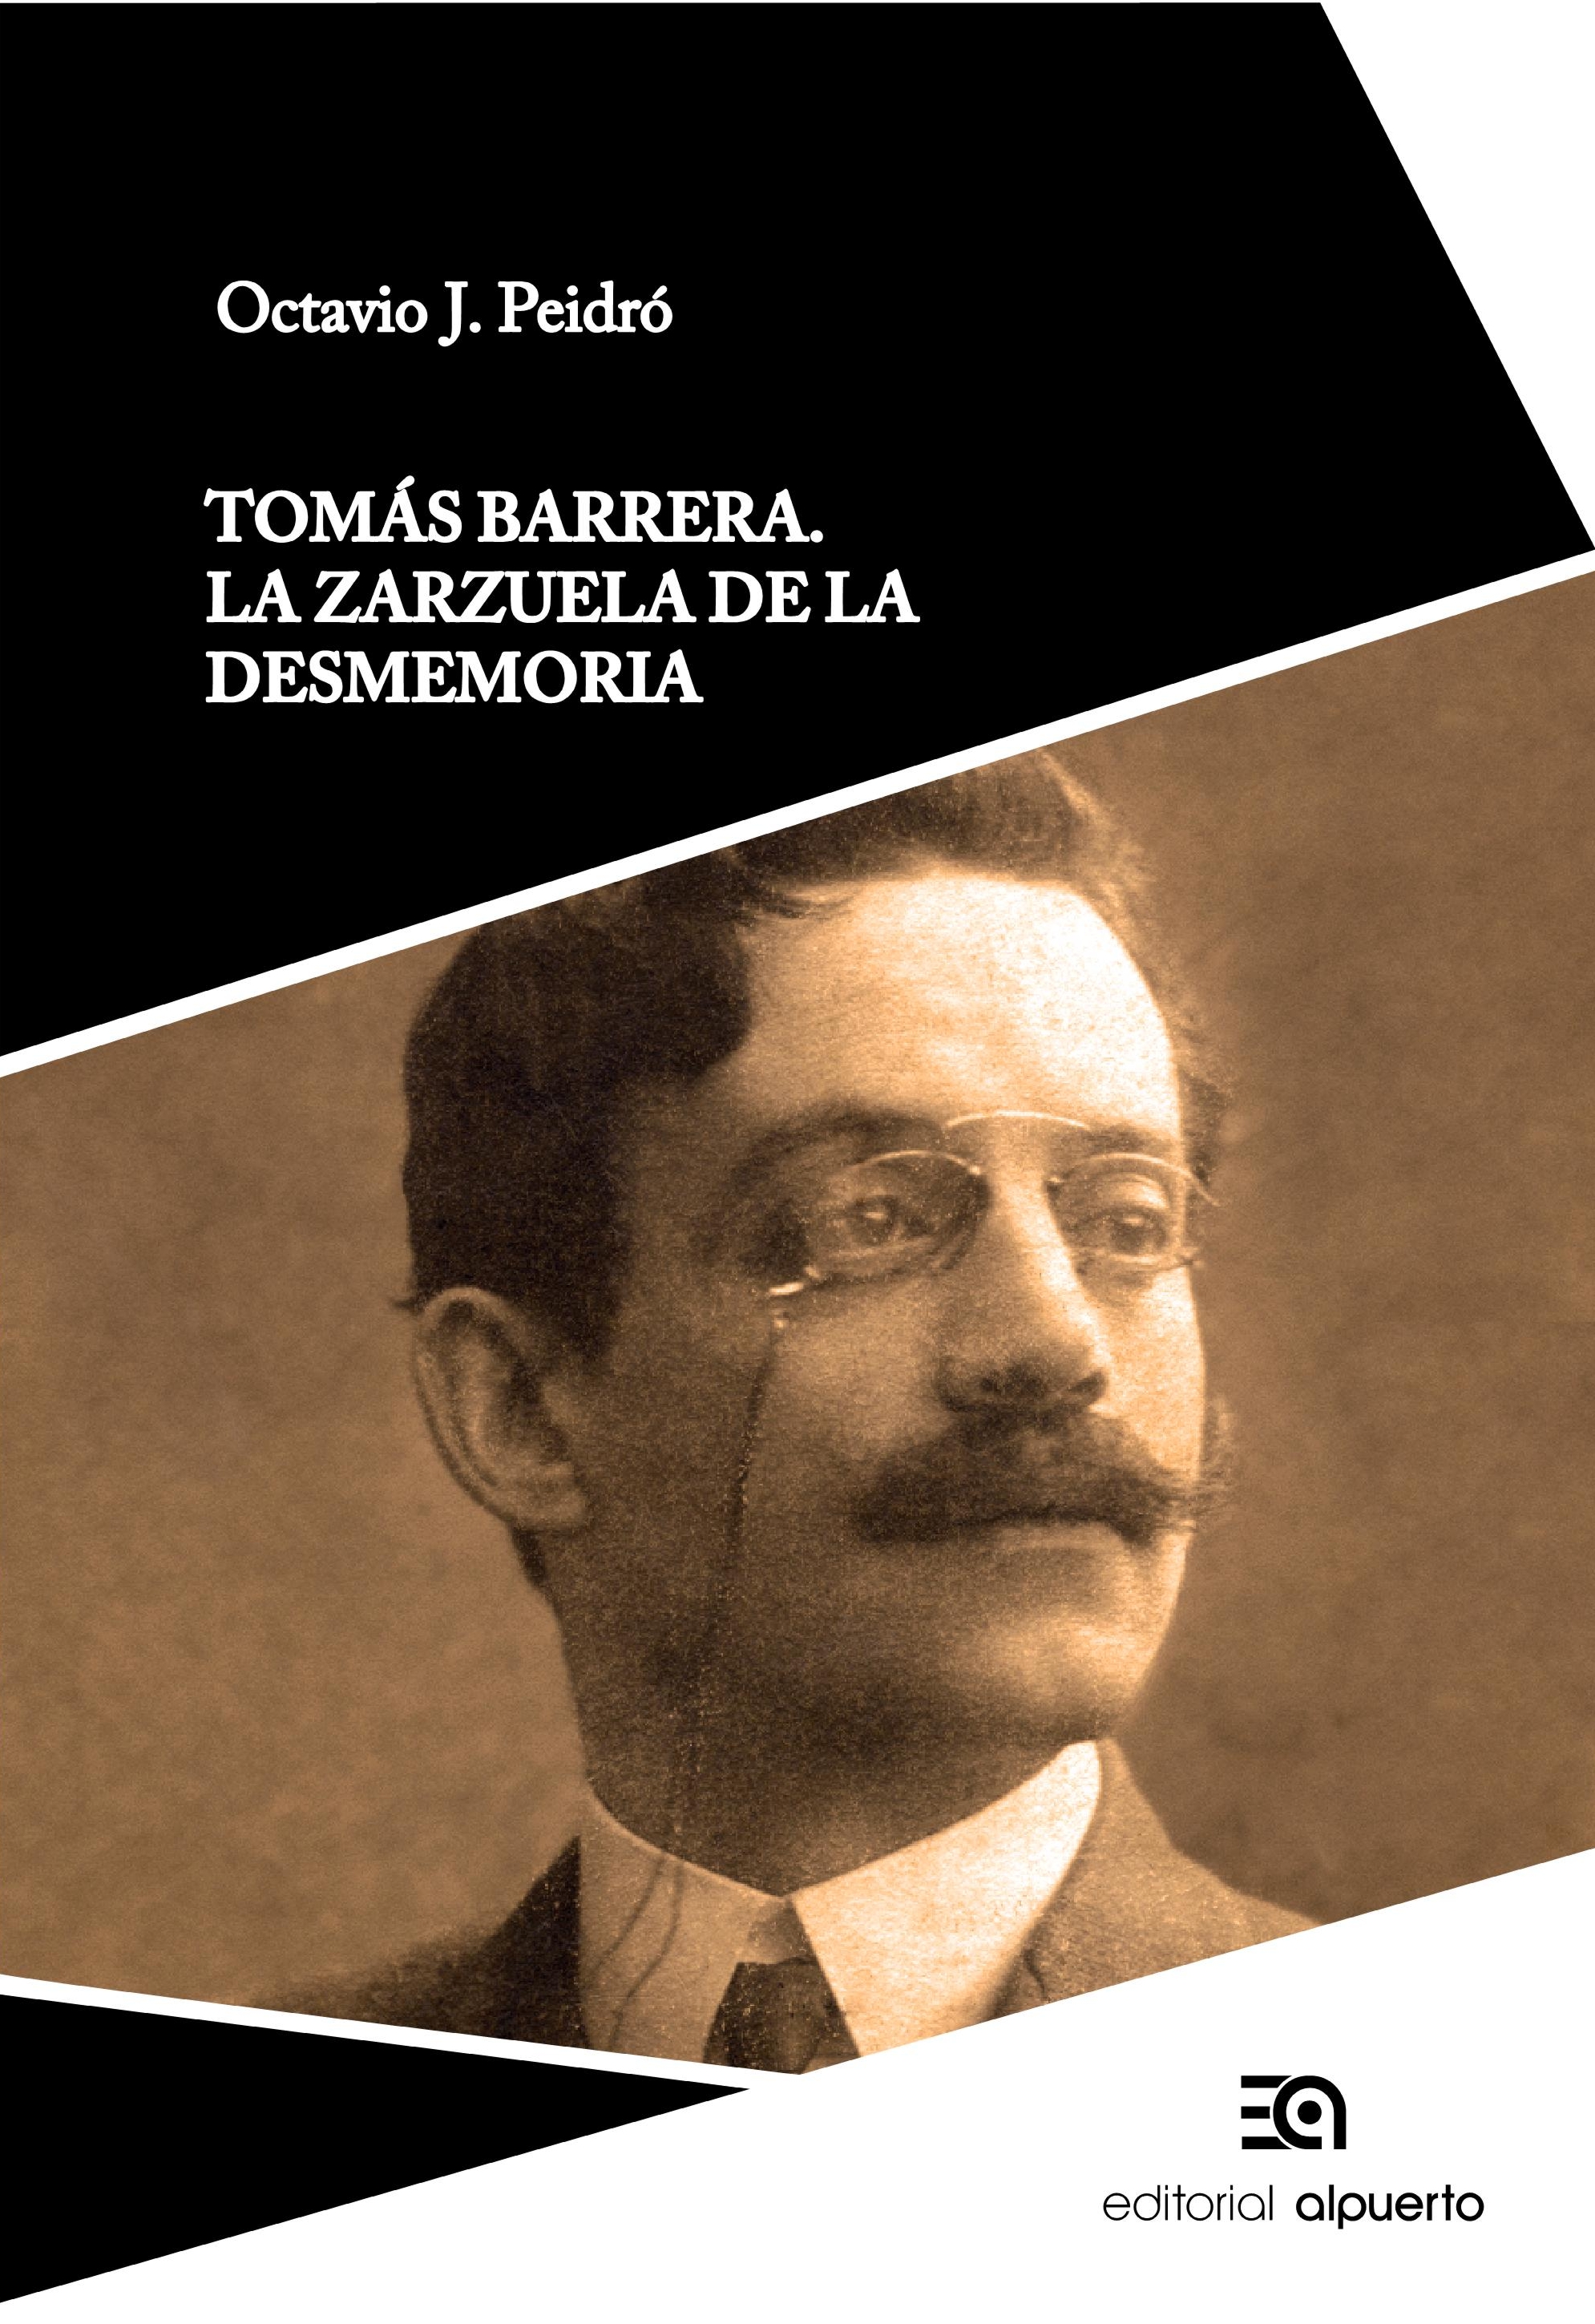 Tomás Barrera